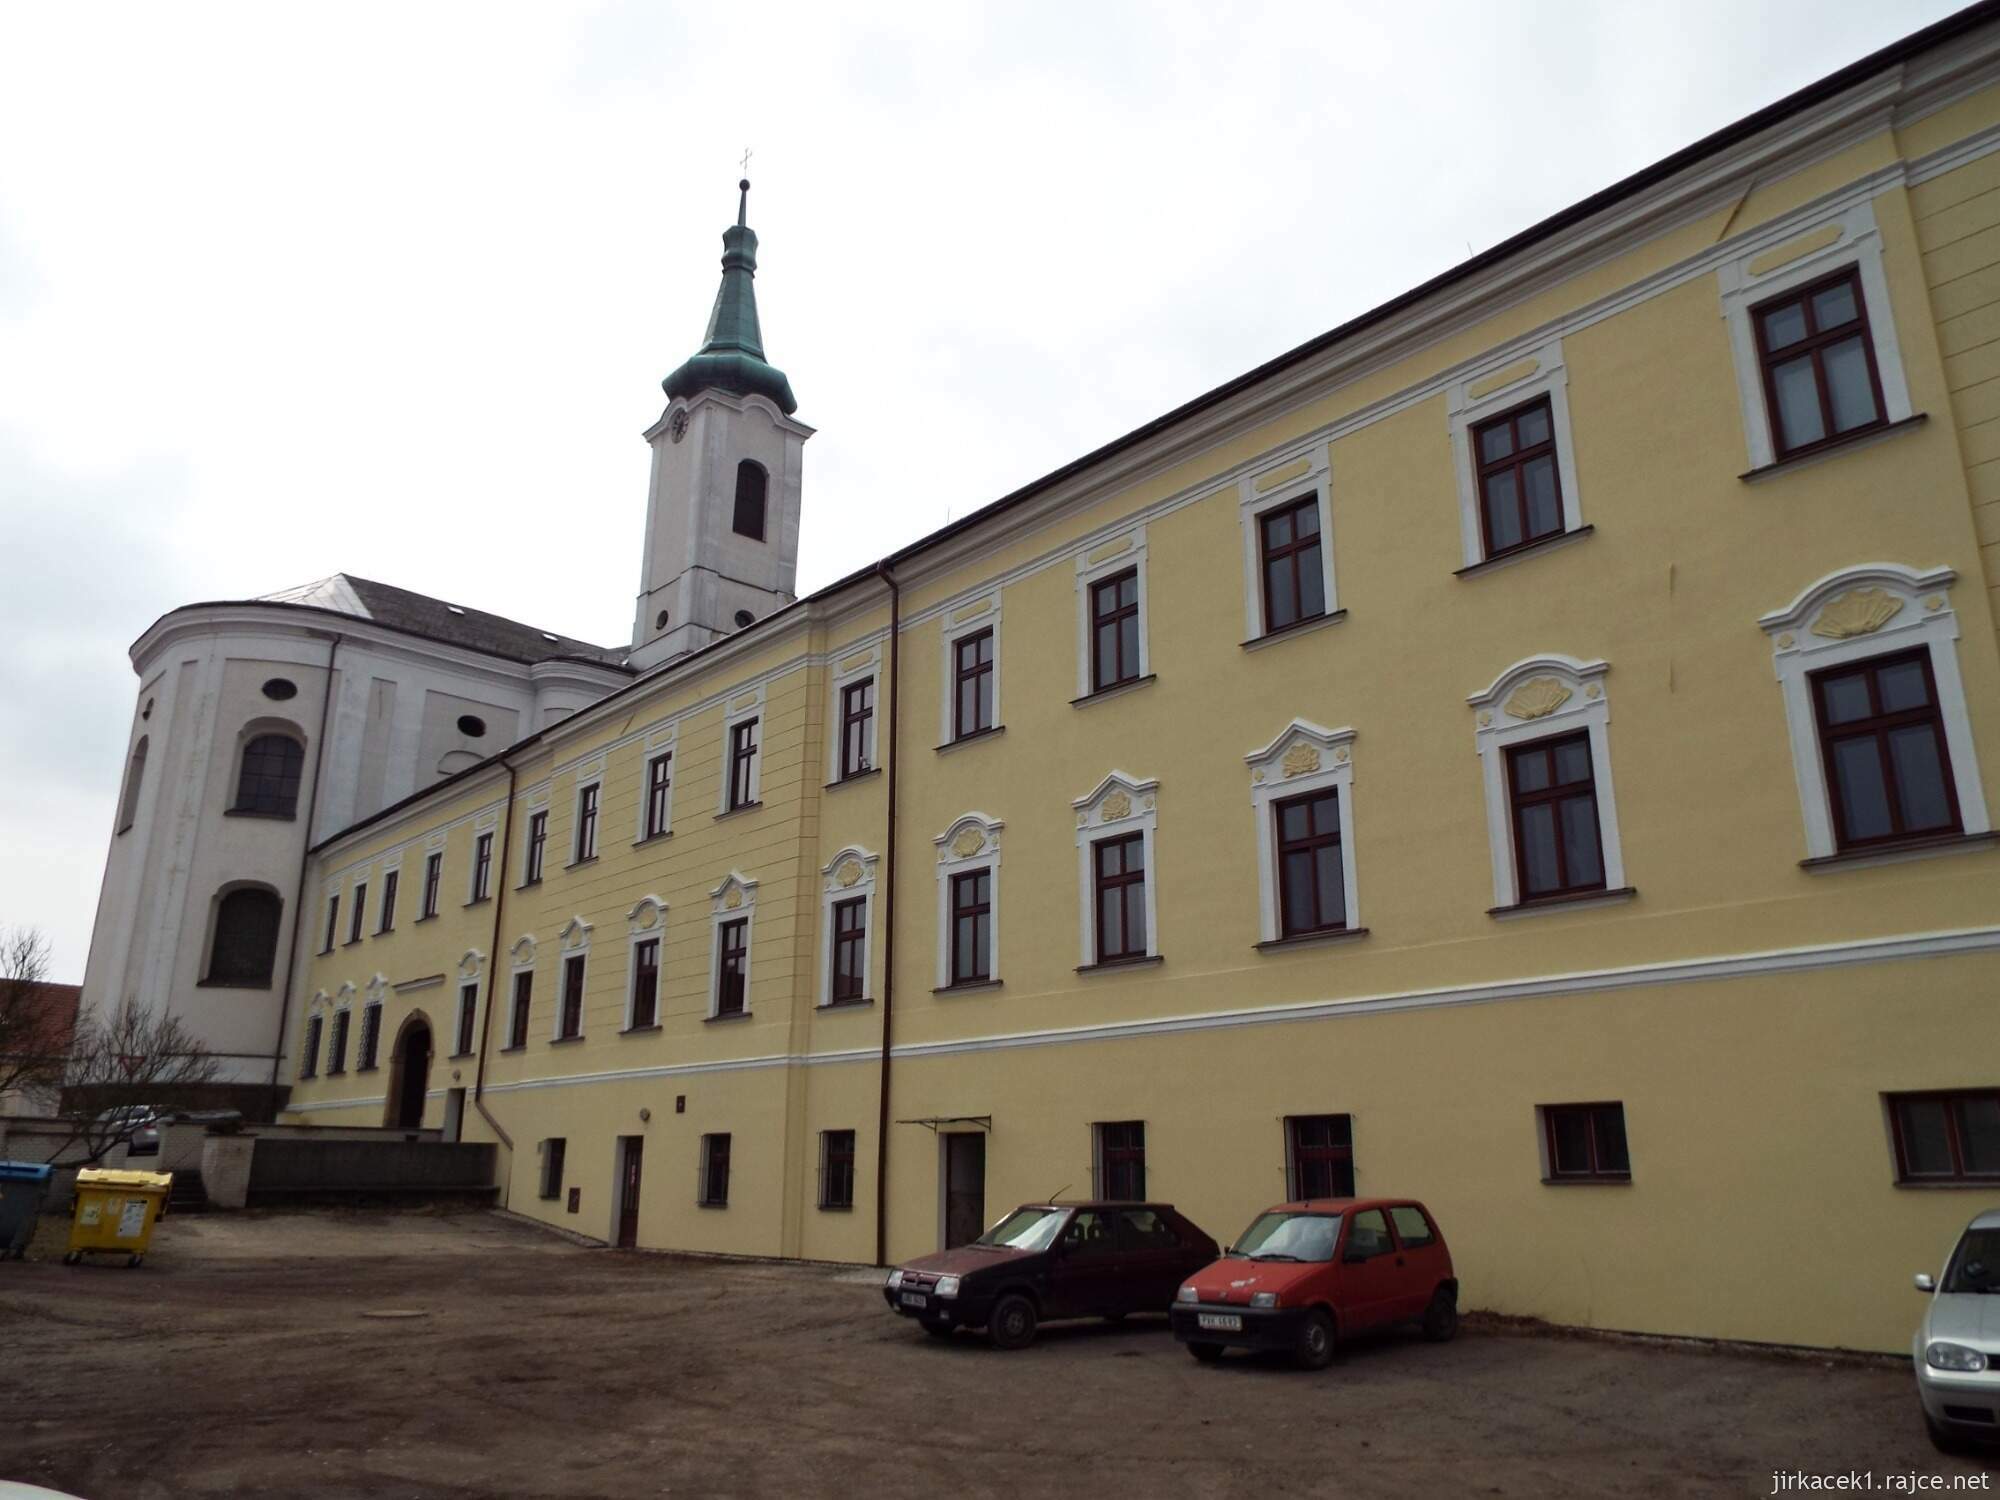 06 - Jevíčko - Kostel Nanebevzetí Panny Marie s klášterem Augustiánů 03